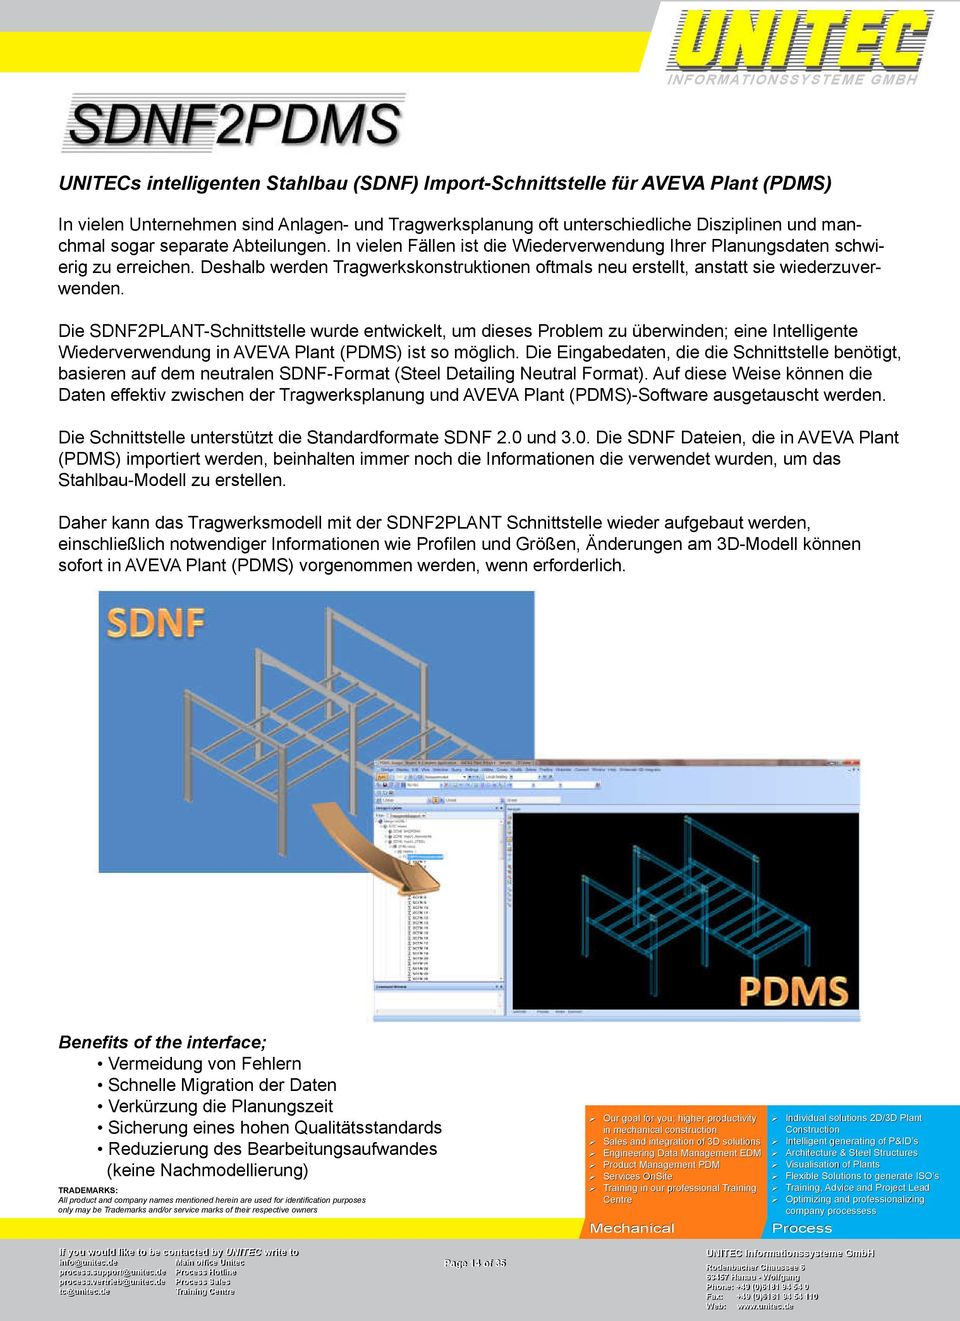 Die SDNF2PLANT-Schnittstelle wurde entwickelt, um dieses Problem zu überwinden; eine Intelligente Wiederverwendung in AVEVA Plant (PDMS) ist so möglich.